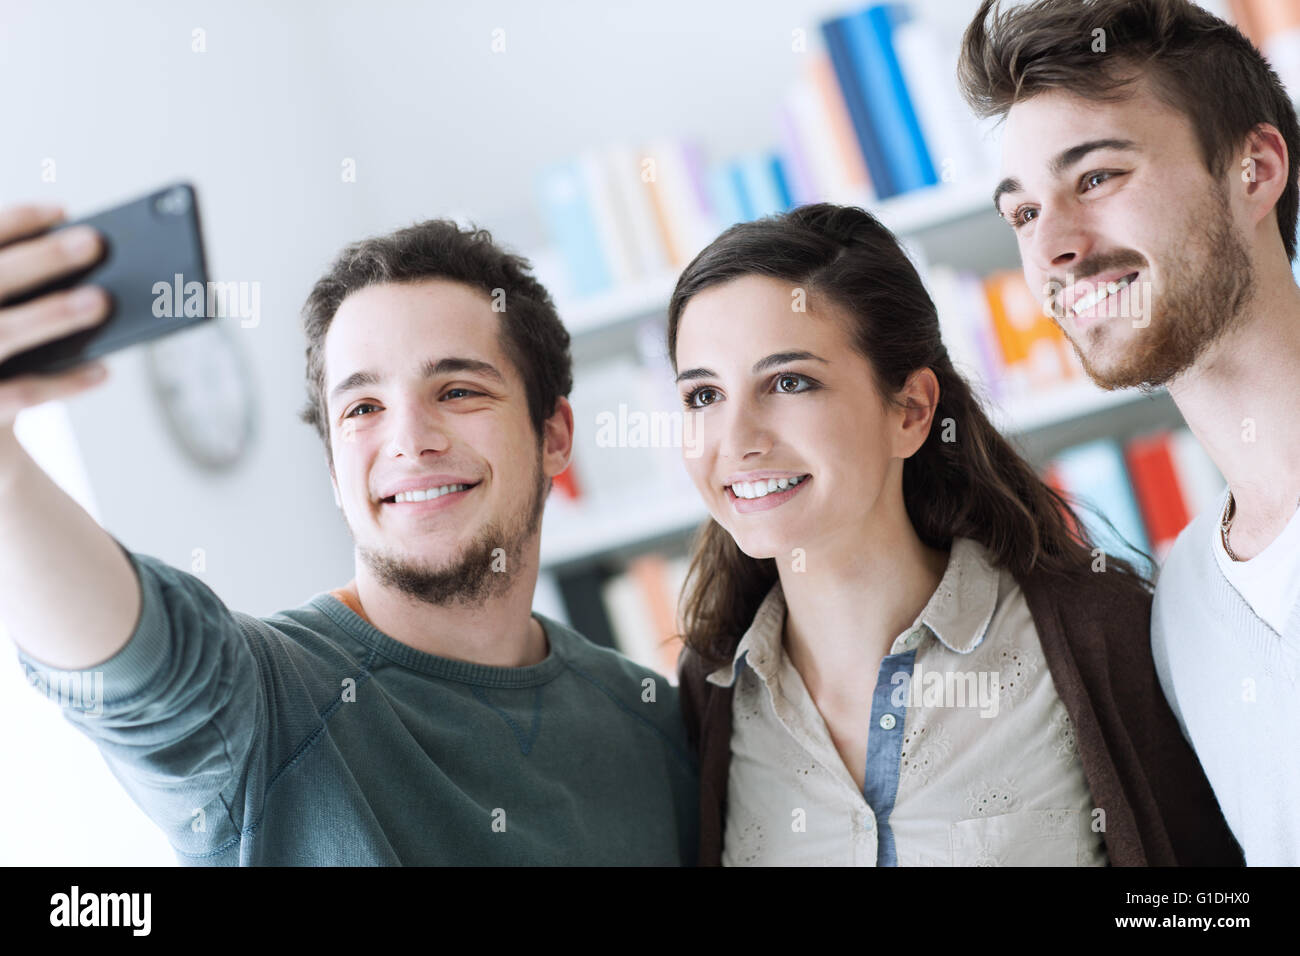 Los adolescentes tomando selfies feliz sonriente con un teléfono móvil, el intercambio, la tecnología y el concepto de amistad Foto de stock